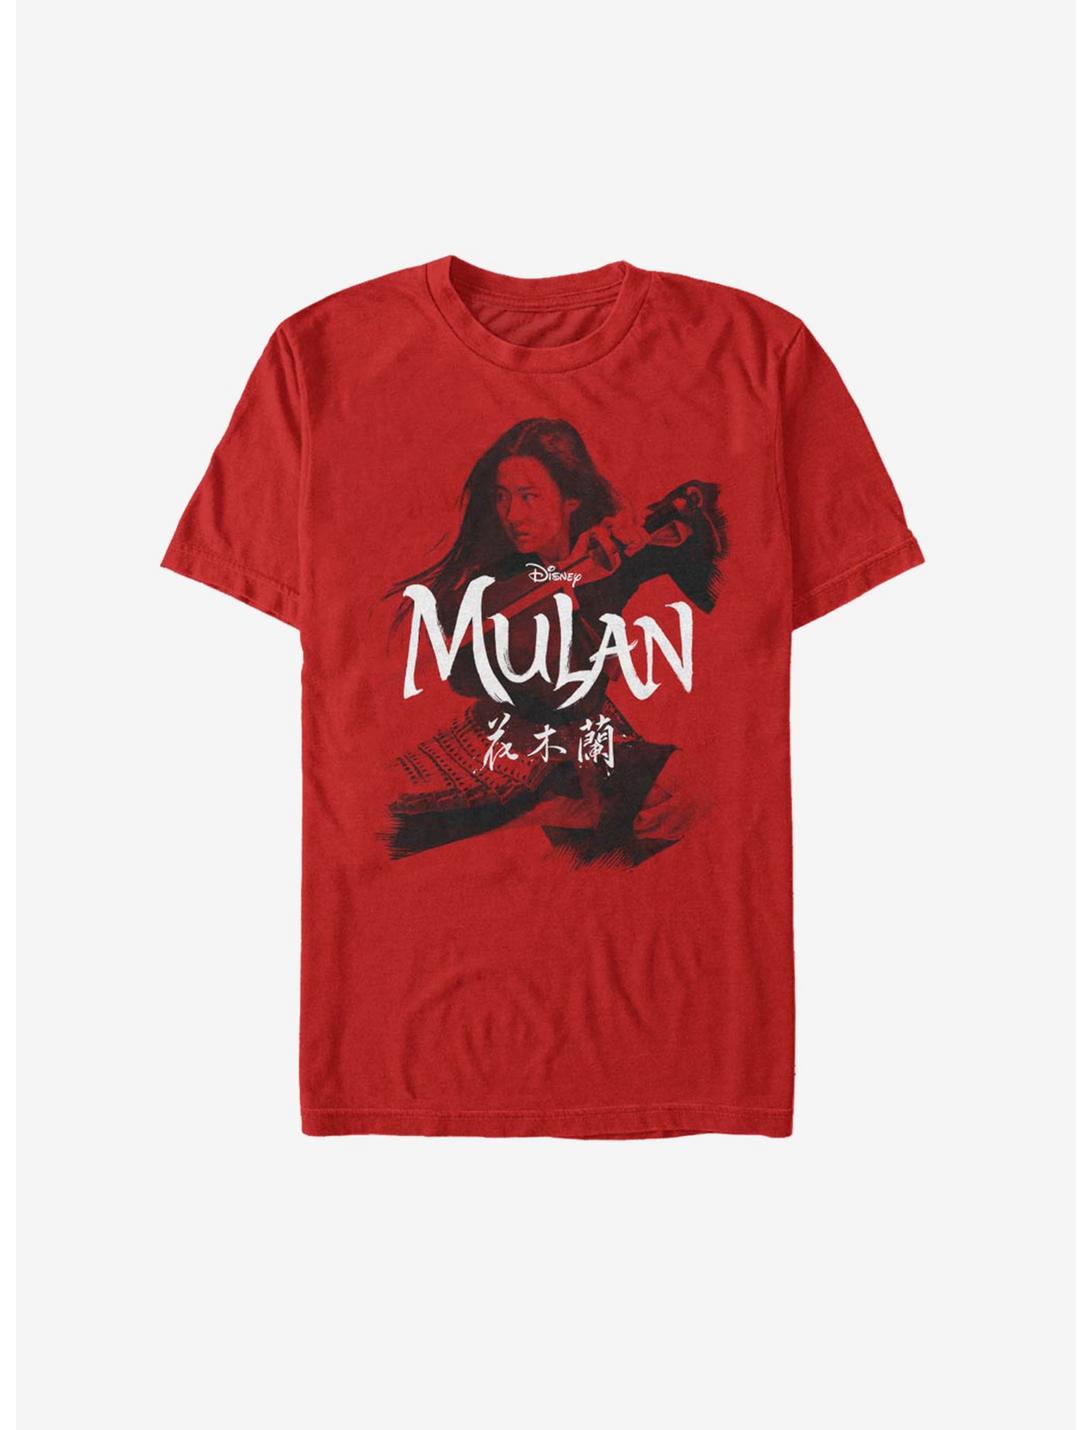 Disney Mulan Live Action Warrior Stance T-Shirt, RED, hi-res